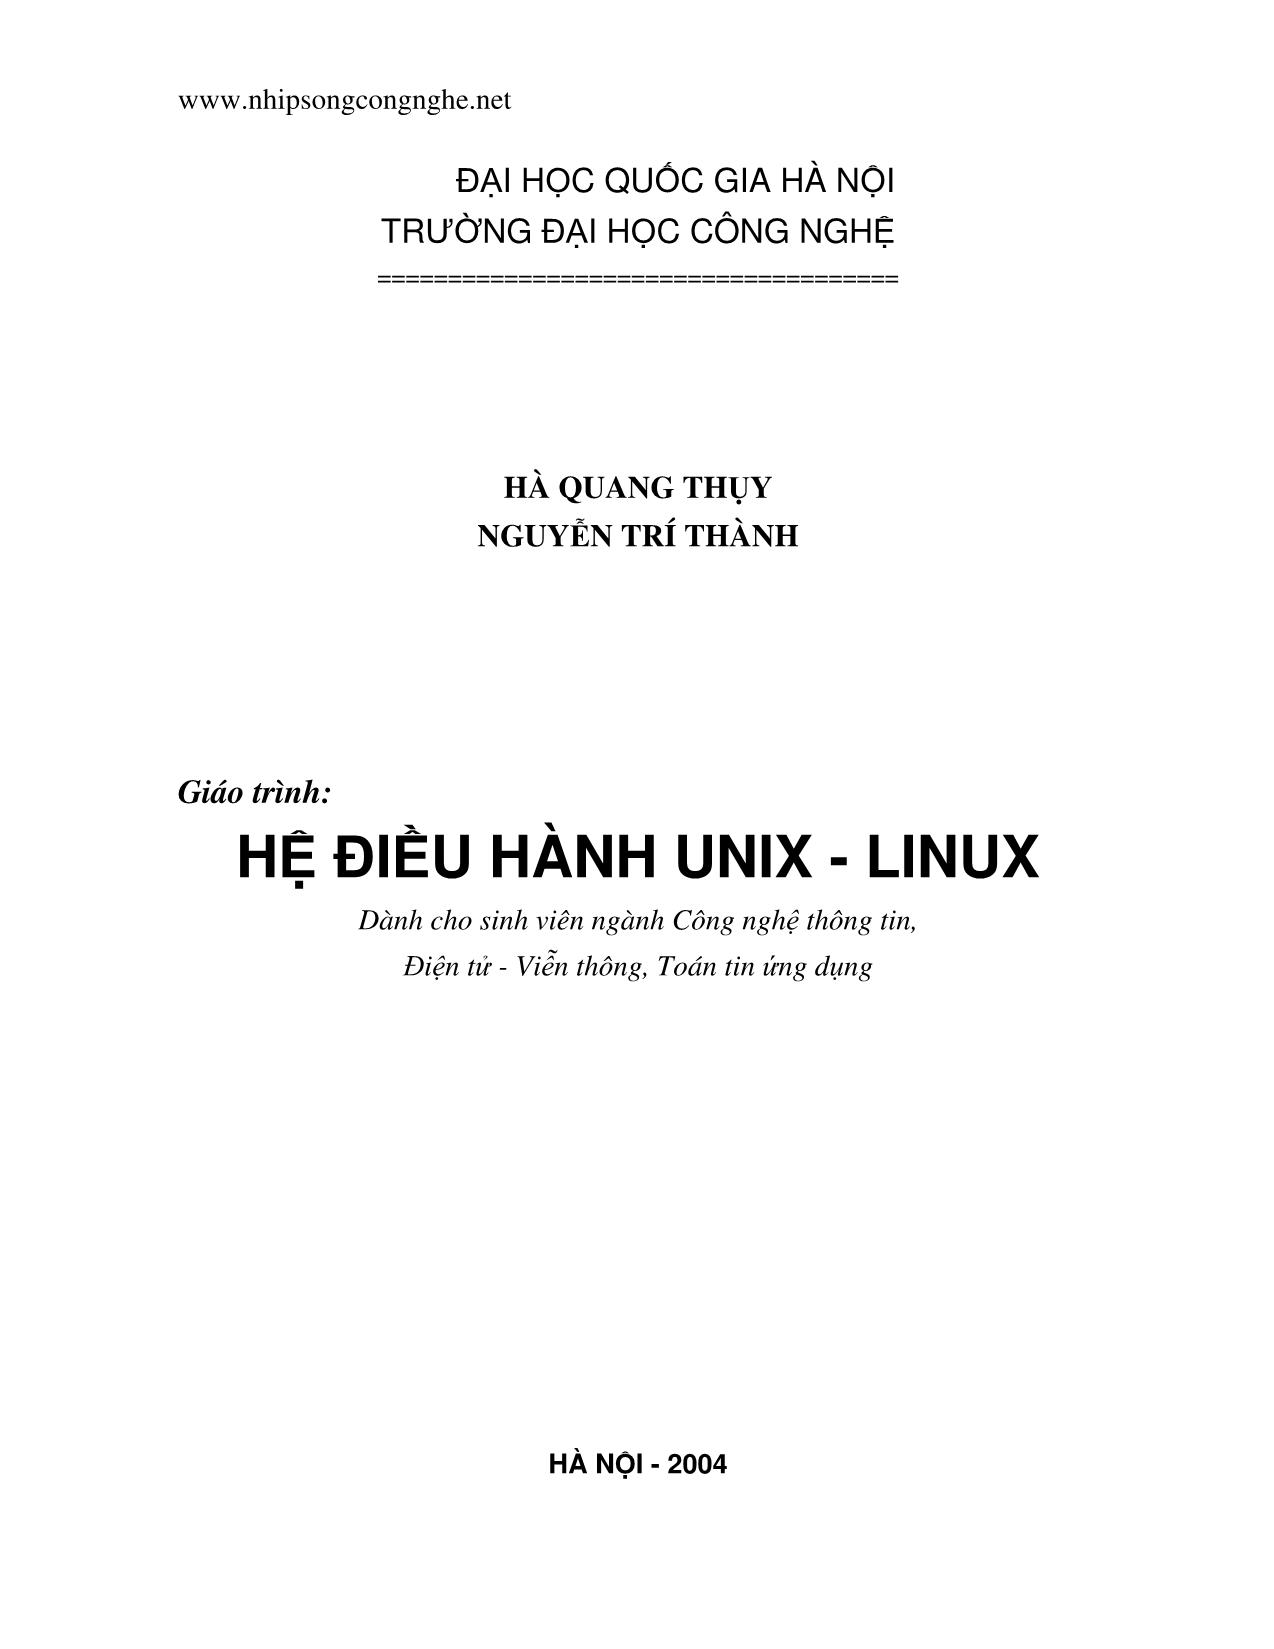 Giáo trình Hệ điều hành Unix - Linux trang 2